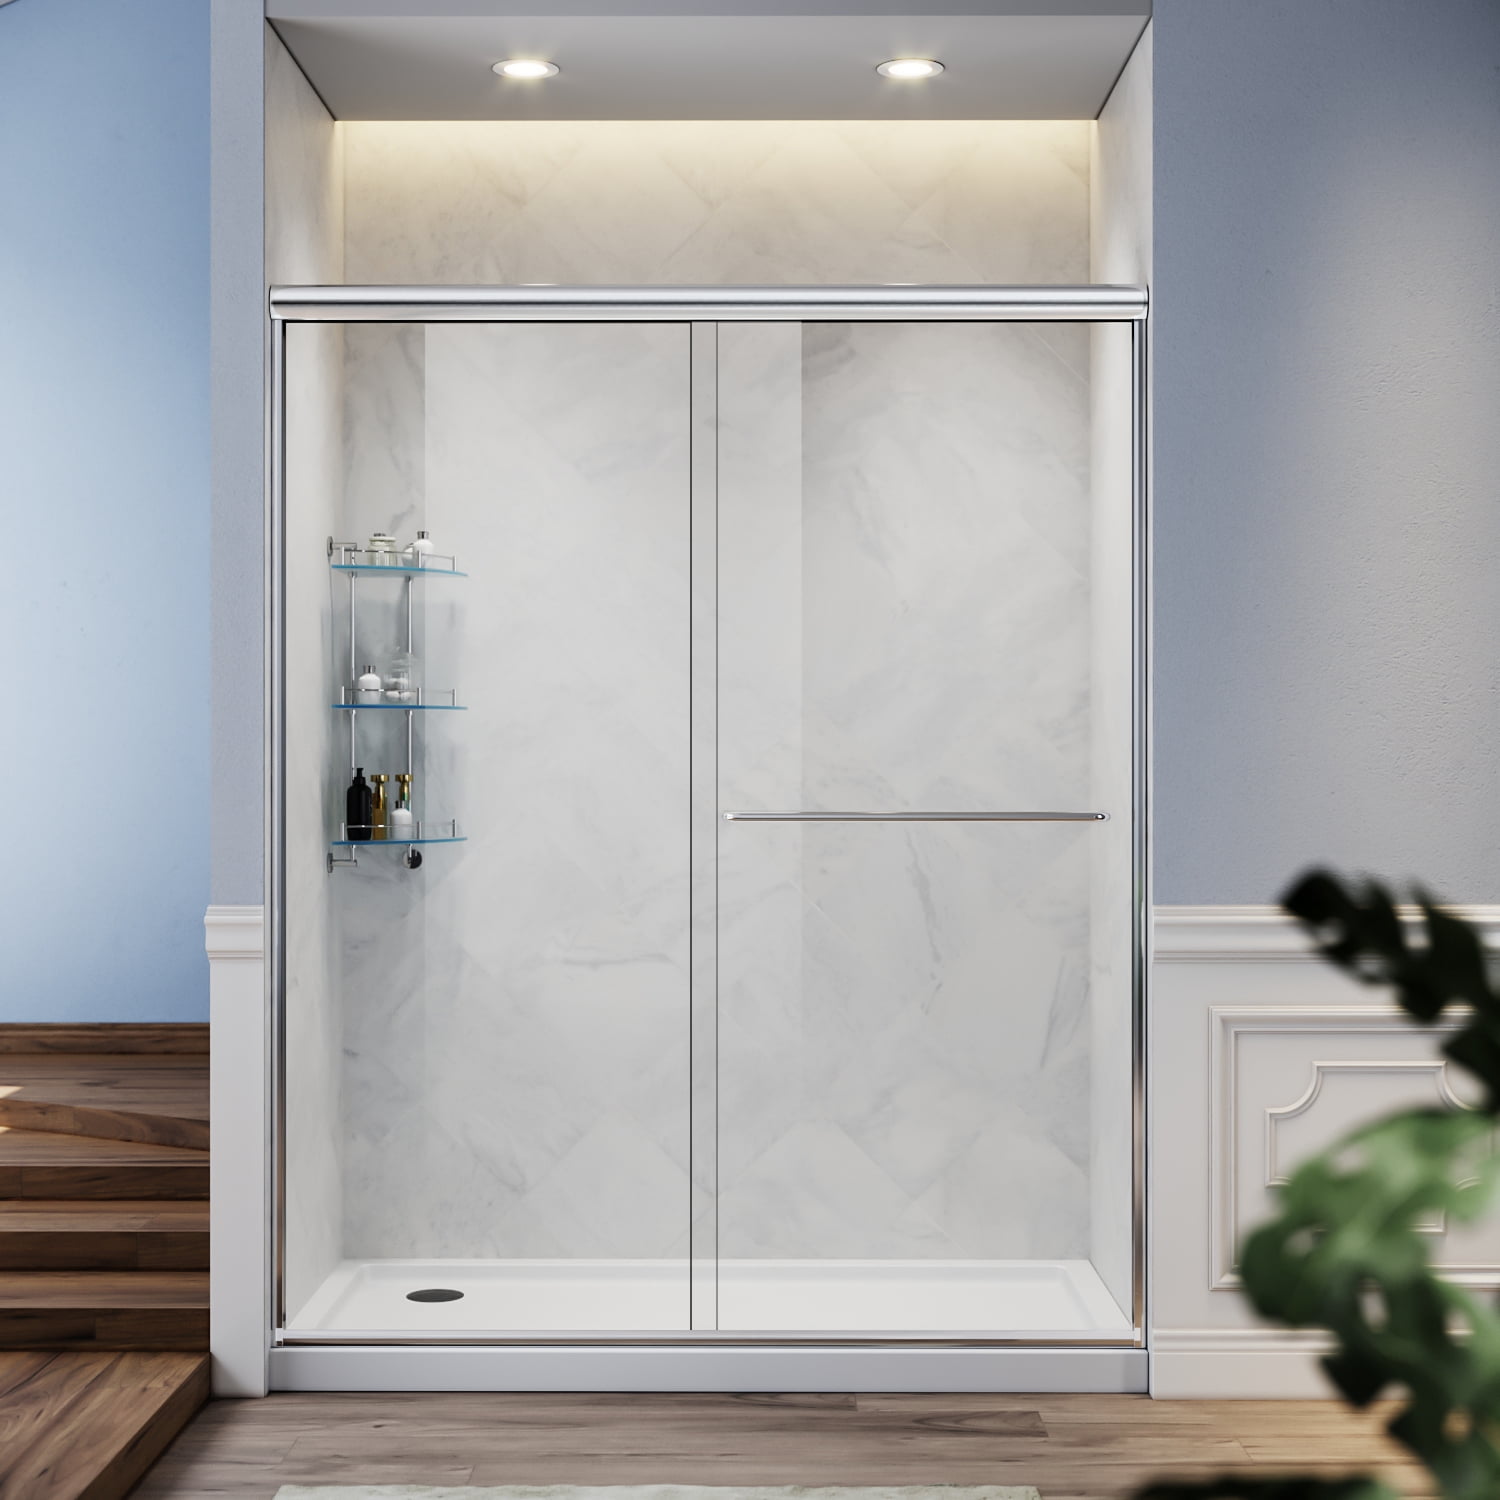 SUNNY SHOWER Glass Door Semi Frameless Sliding Glass Shower Door, 1/4 inch Clear Glass Doors for